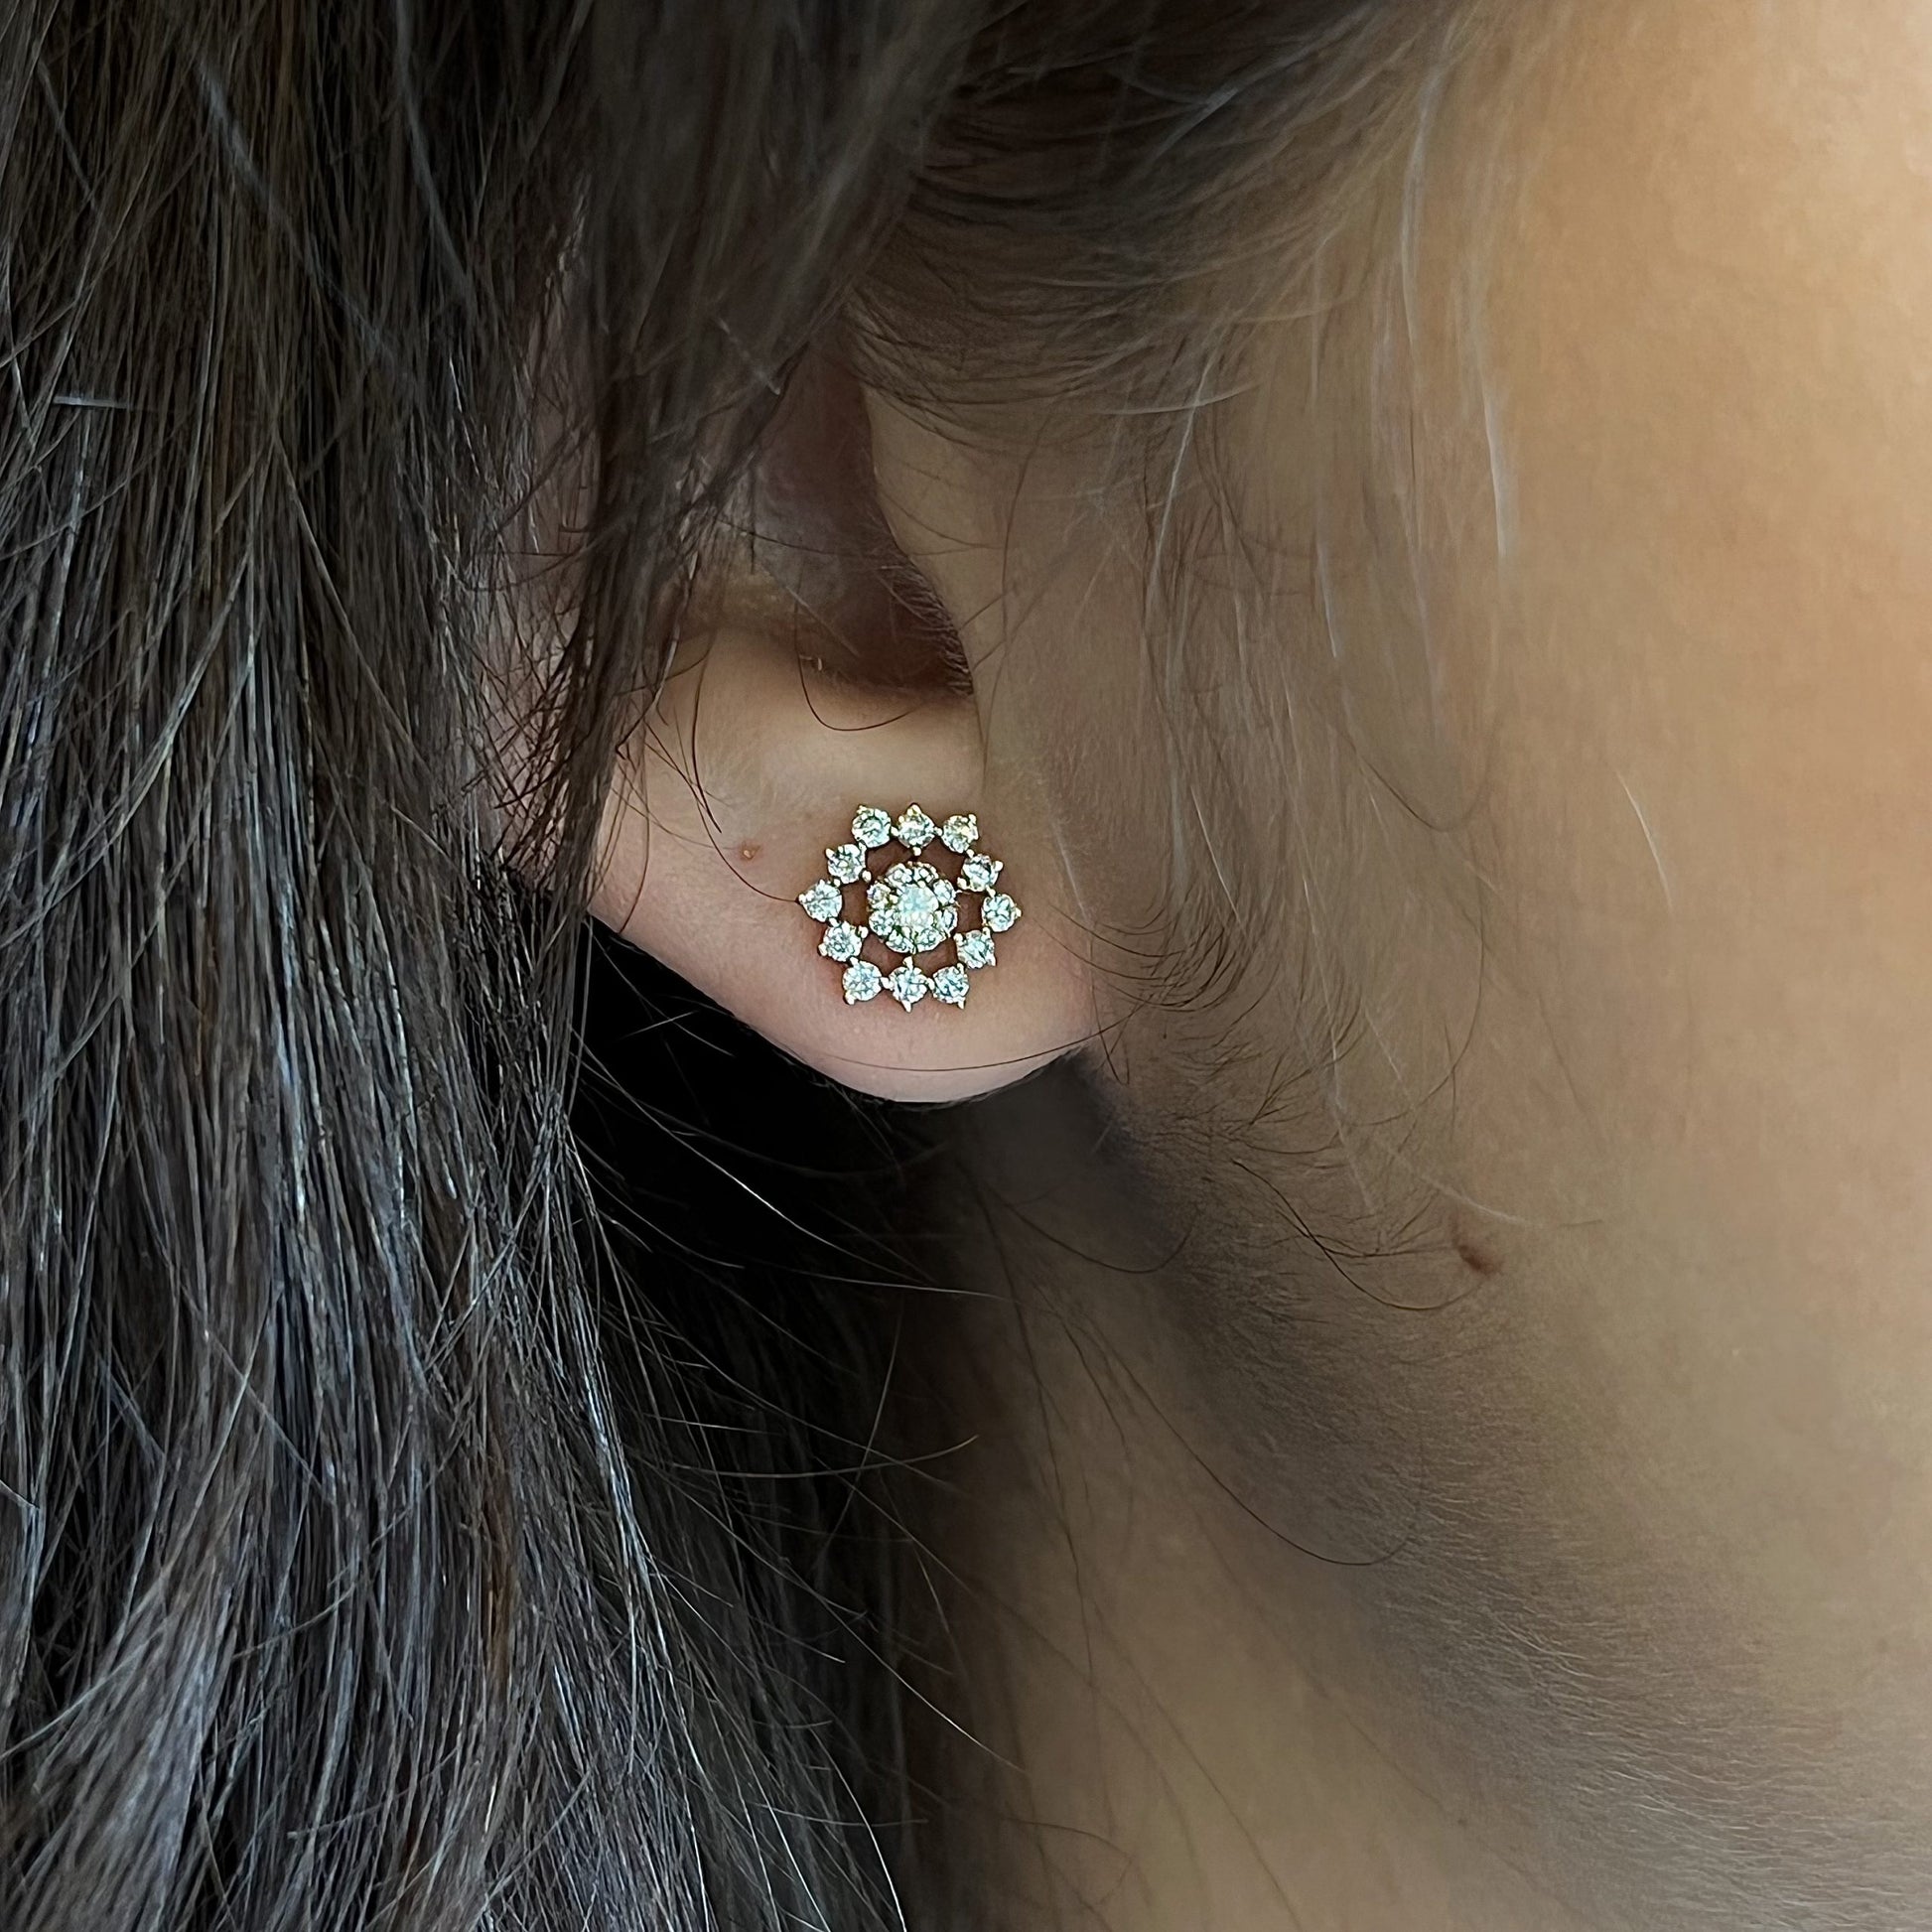 14K Yellow Gold 1/3 Ct.tw. Diamond Flower Studs Earring - Earrings - Jewelry